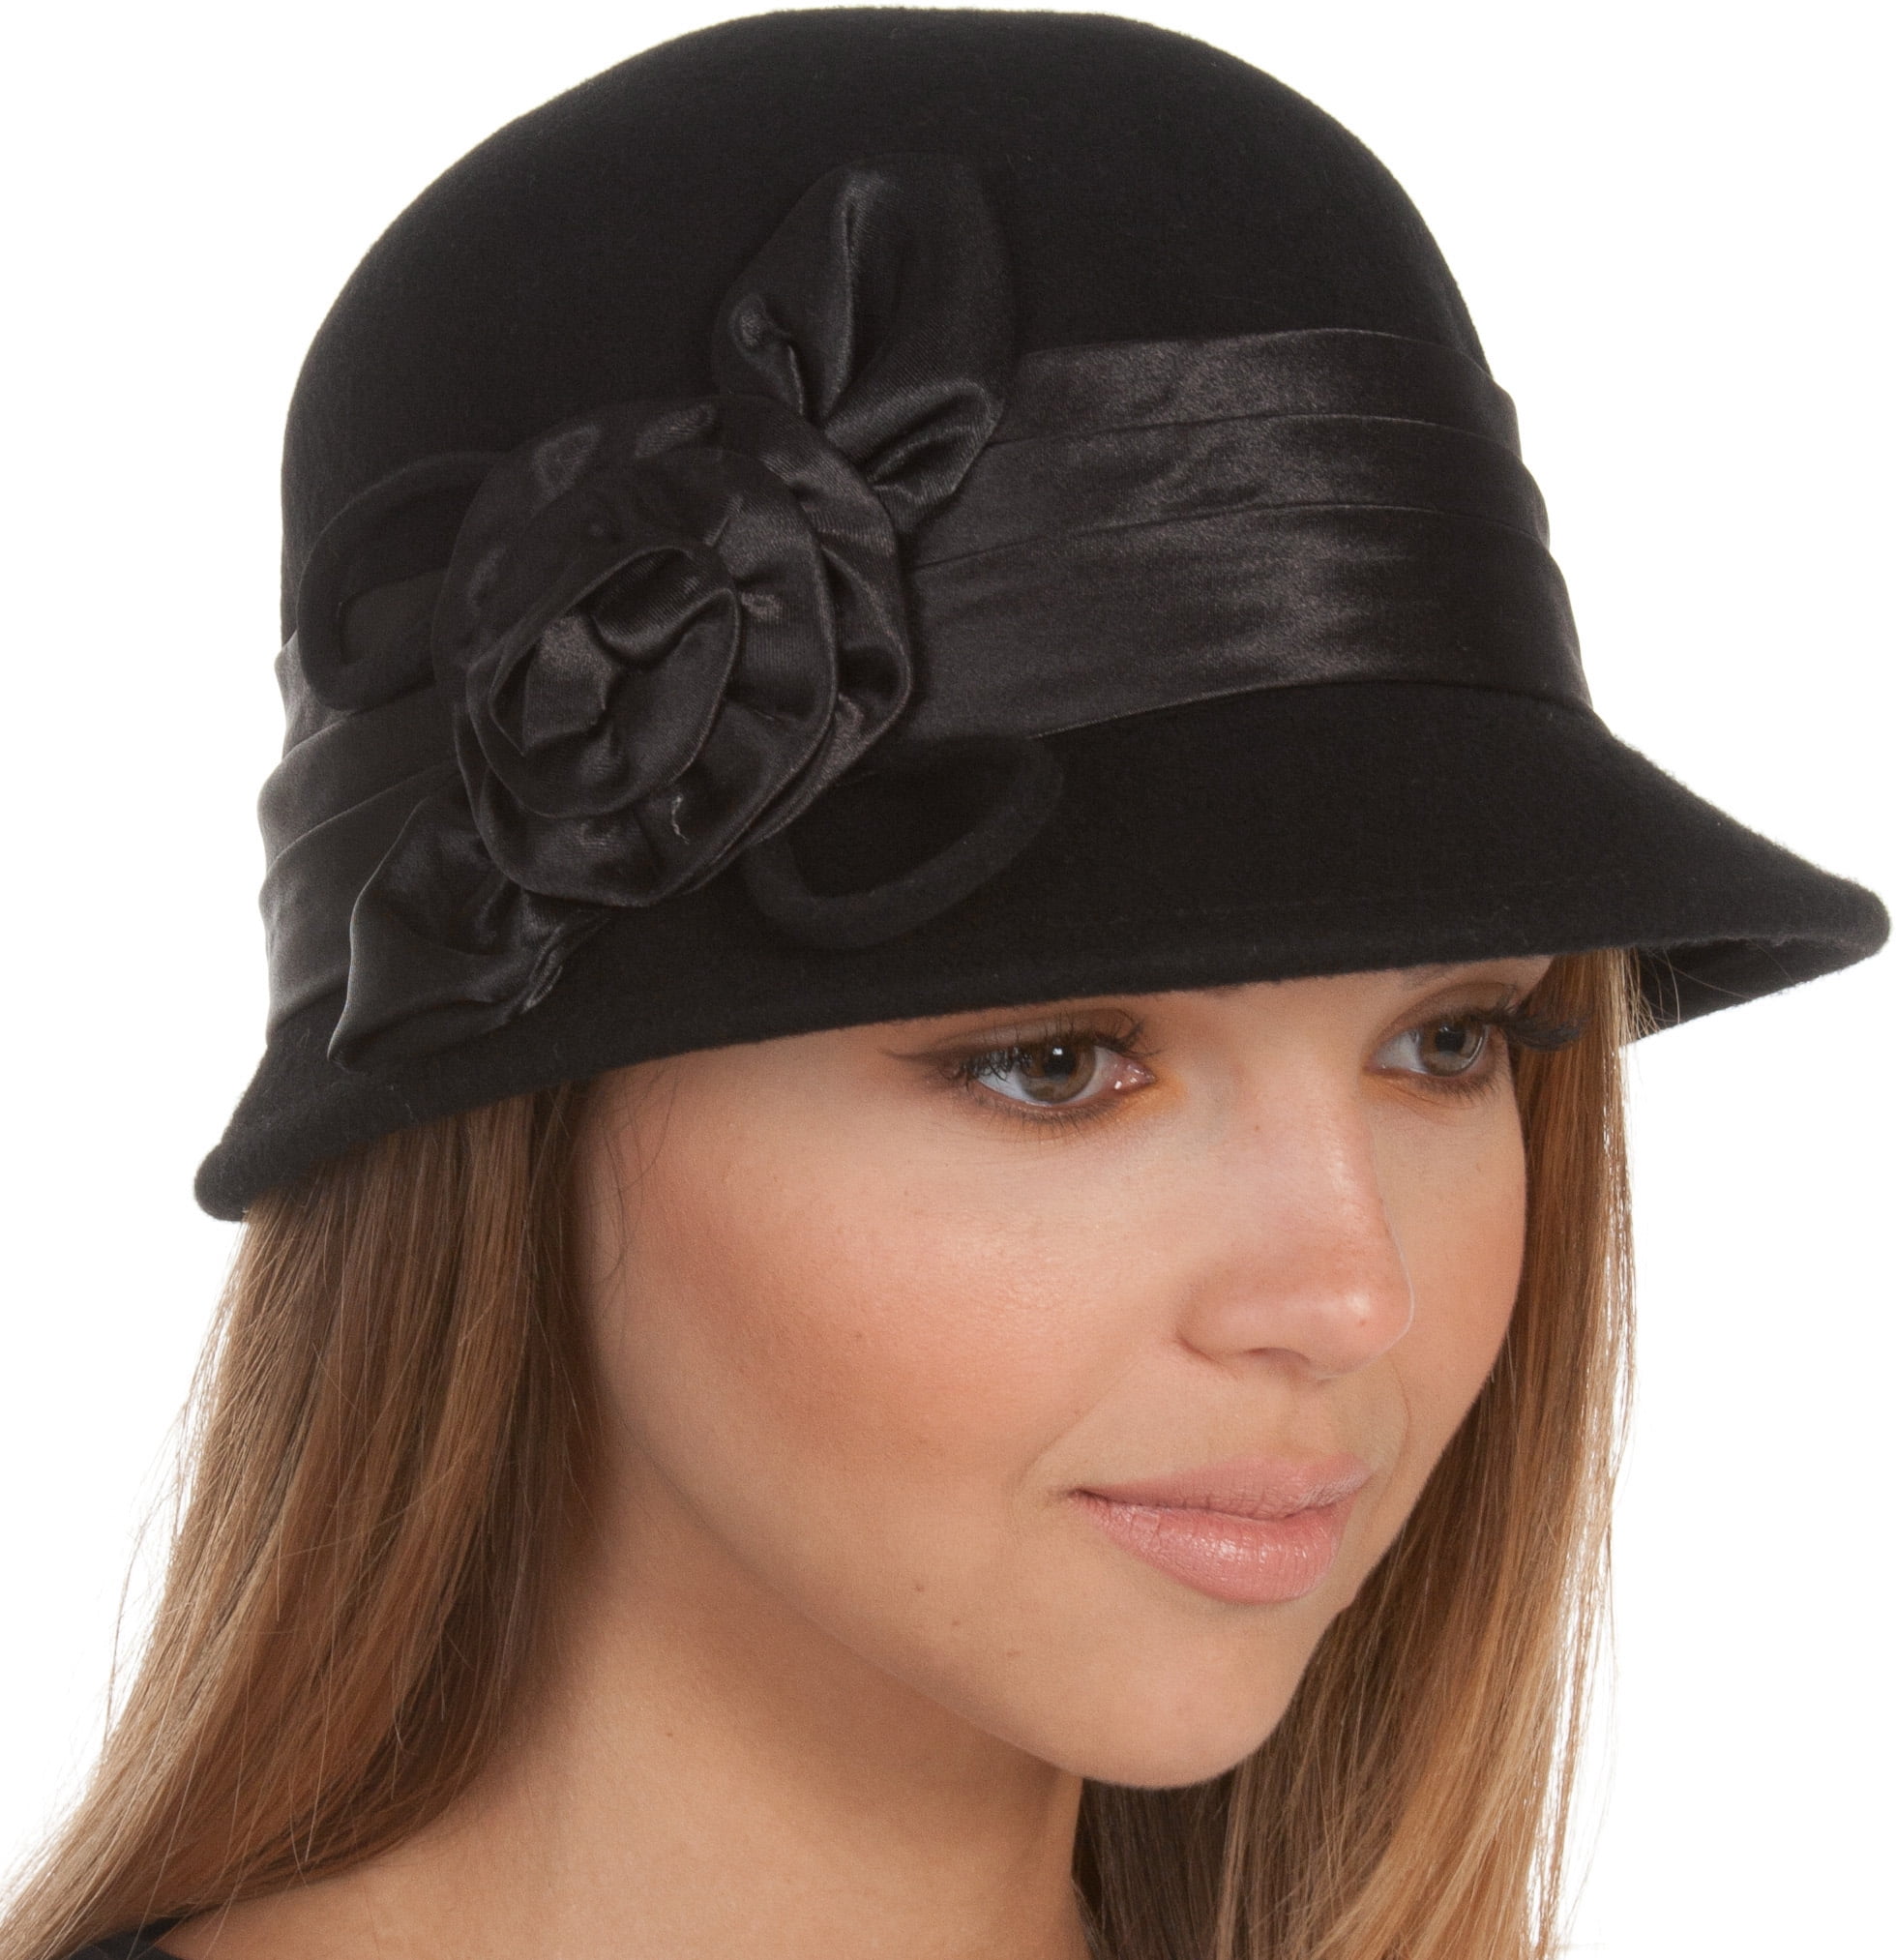 CHIC-CHIC Ladies Vintage Elegant Wool Cloche Bucket Hat Winter Warm Flower Brim Cap